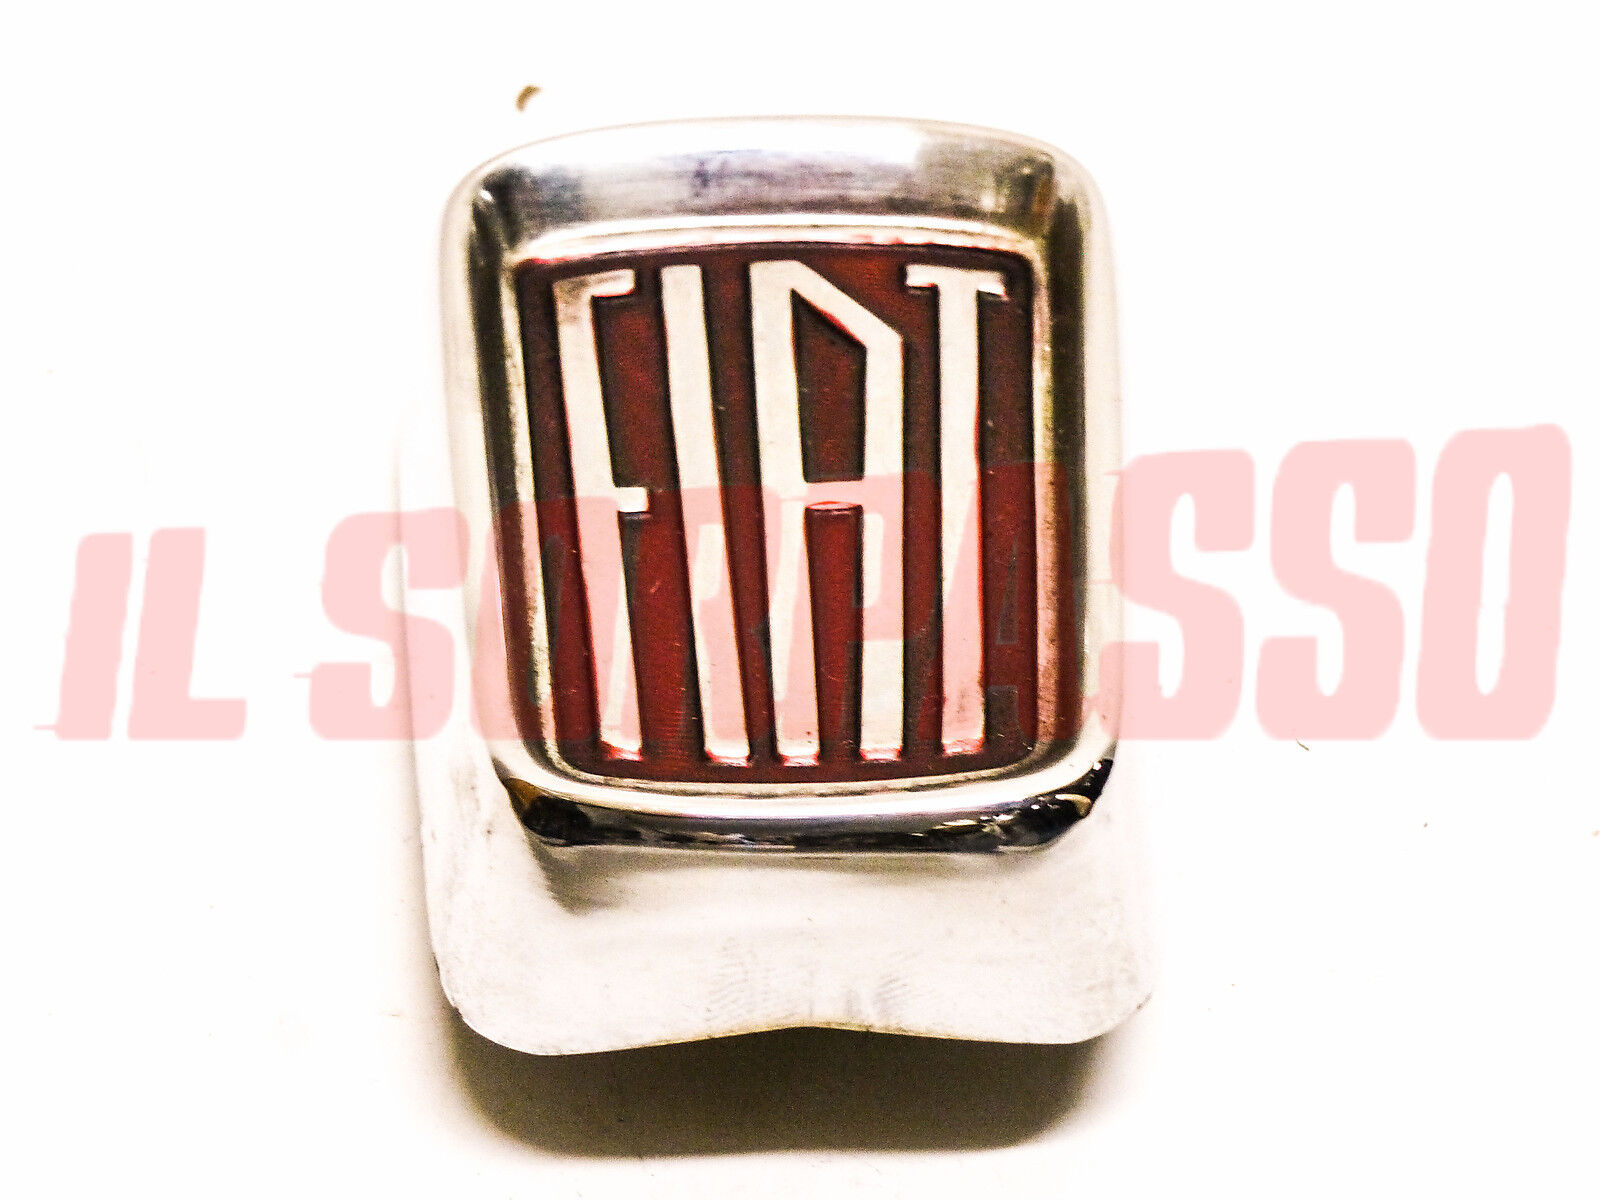 Emblemat Napis owiewka Fiat 1100 103 H - Special - Export Original-pokaż oryginalną nazwę Ograniczona wyprzedaż, popularna wyprzedaż